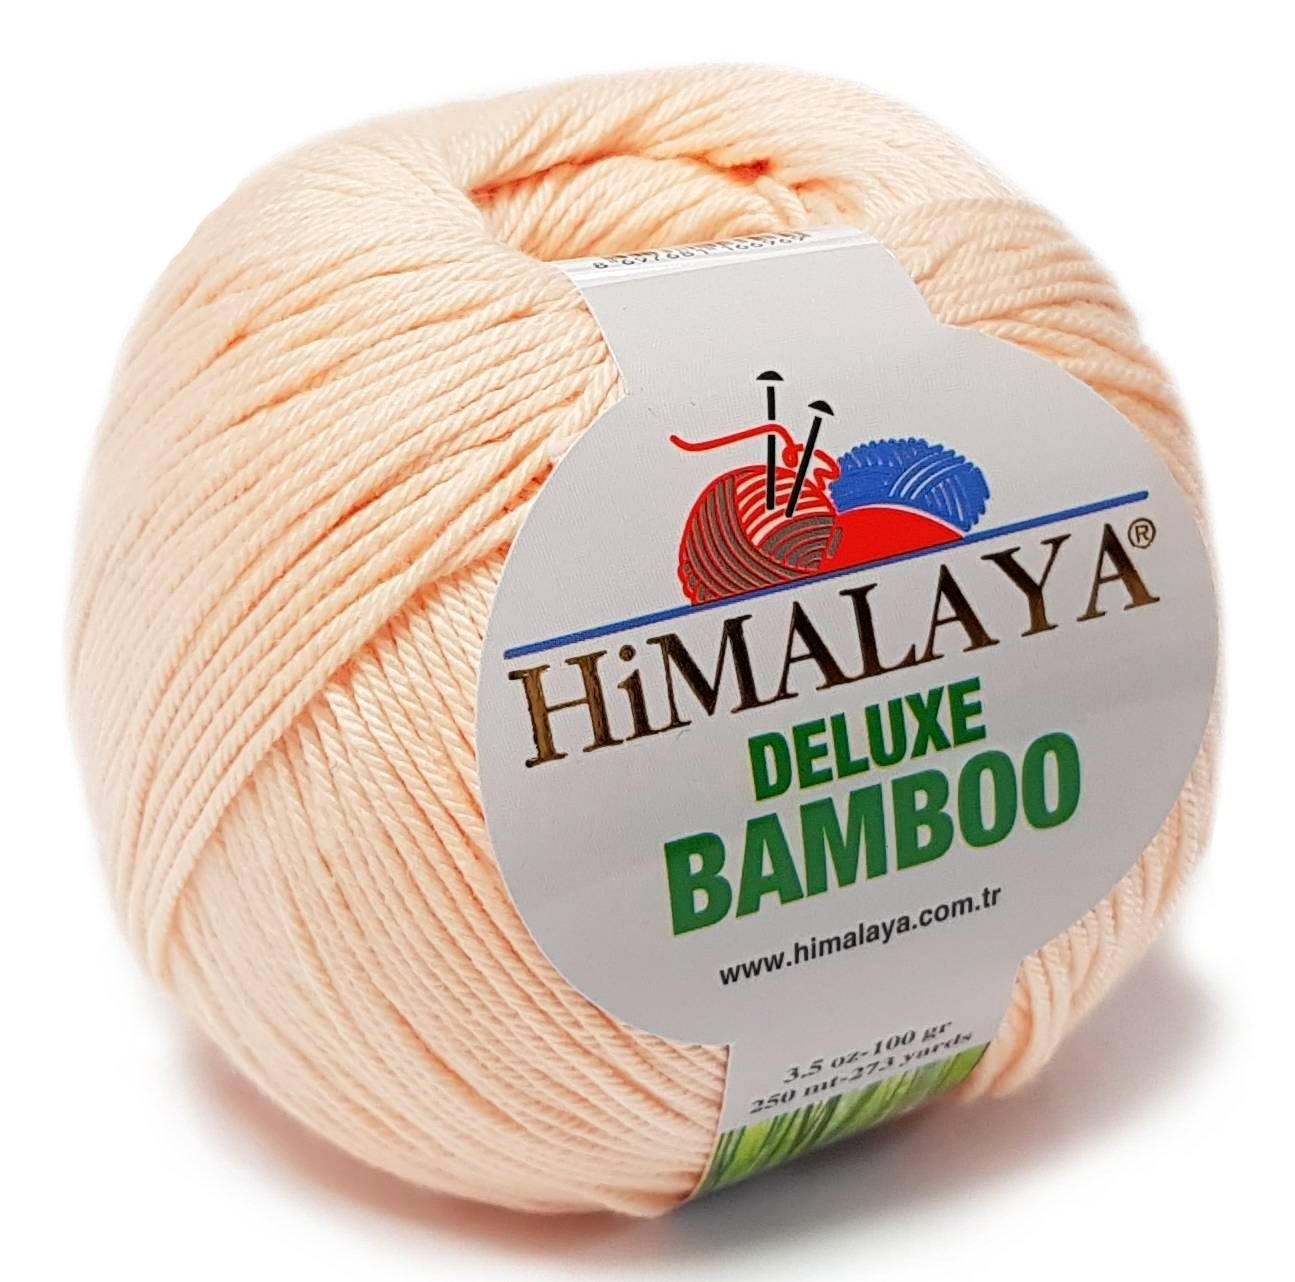 Пряжа гималаи купить. Deluxe Bamboo Himalaya пряжа 124-40. Пряжа Himalaya Bamboo палитра. Пряжа Himalaya Deluxe Bamboo. Himalaya Deluxe Bamboo палитра.